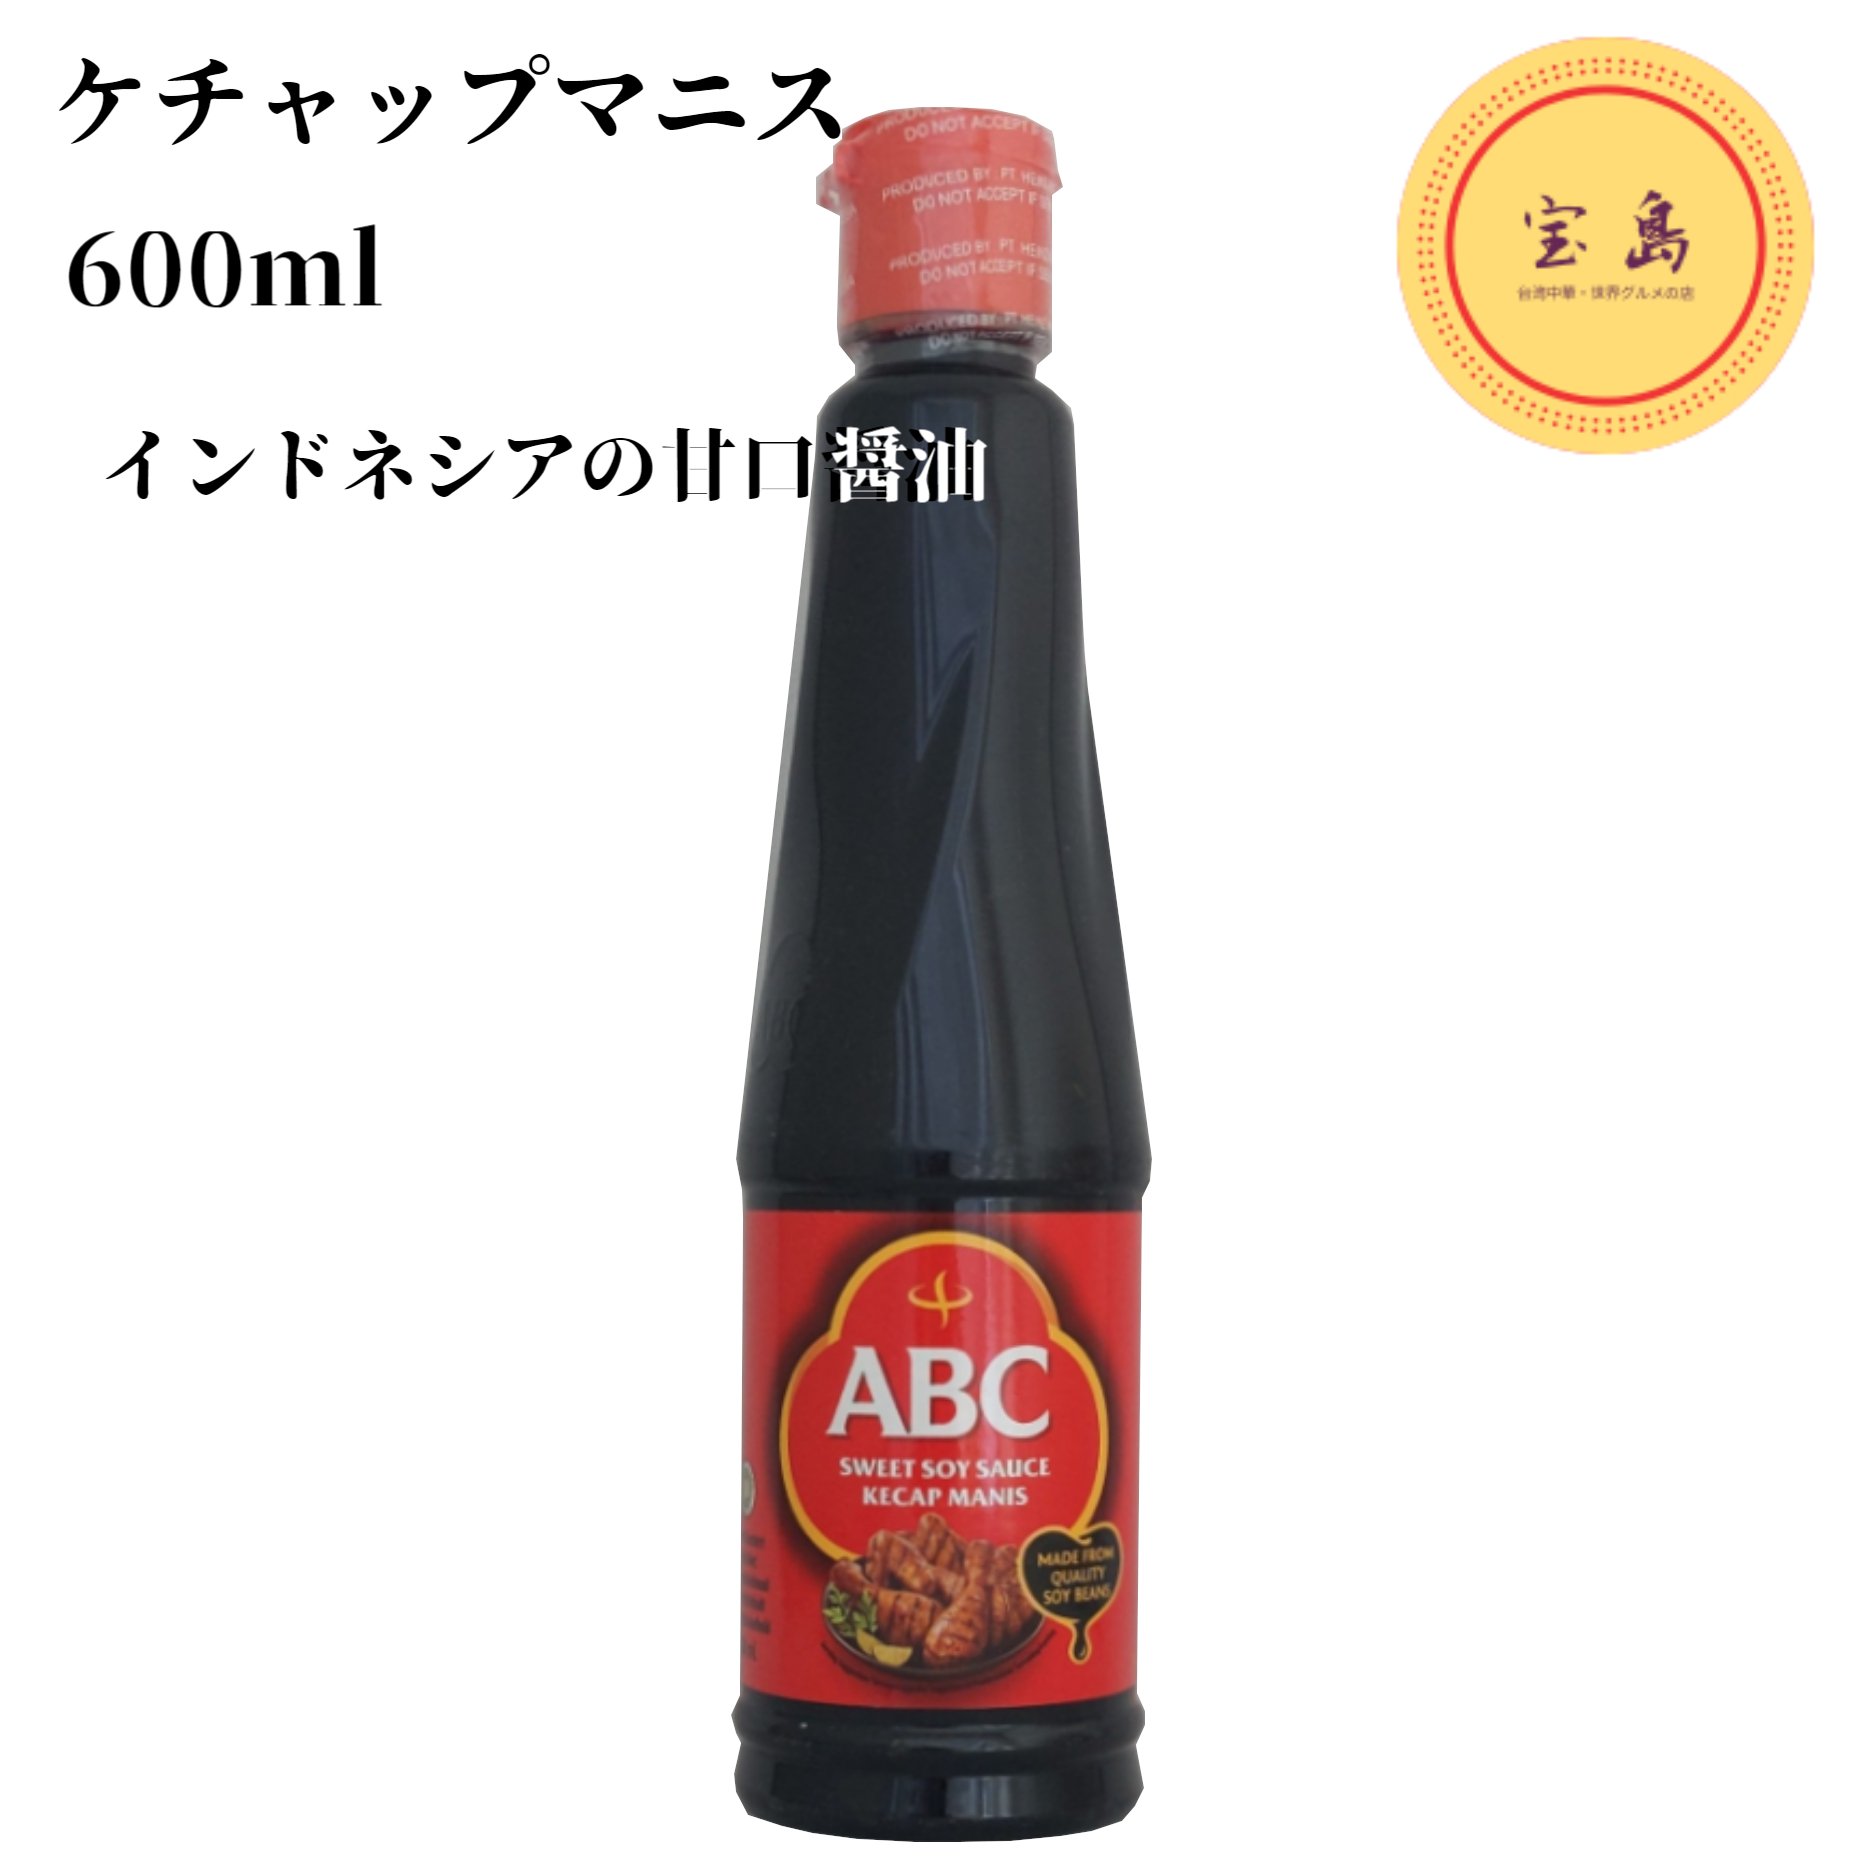 ABCケチャップマニス 600ml【甘口たま